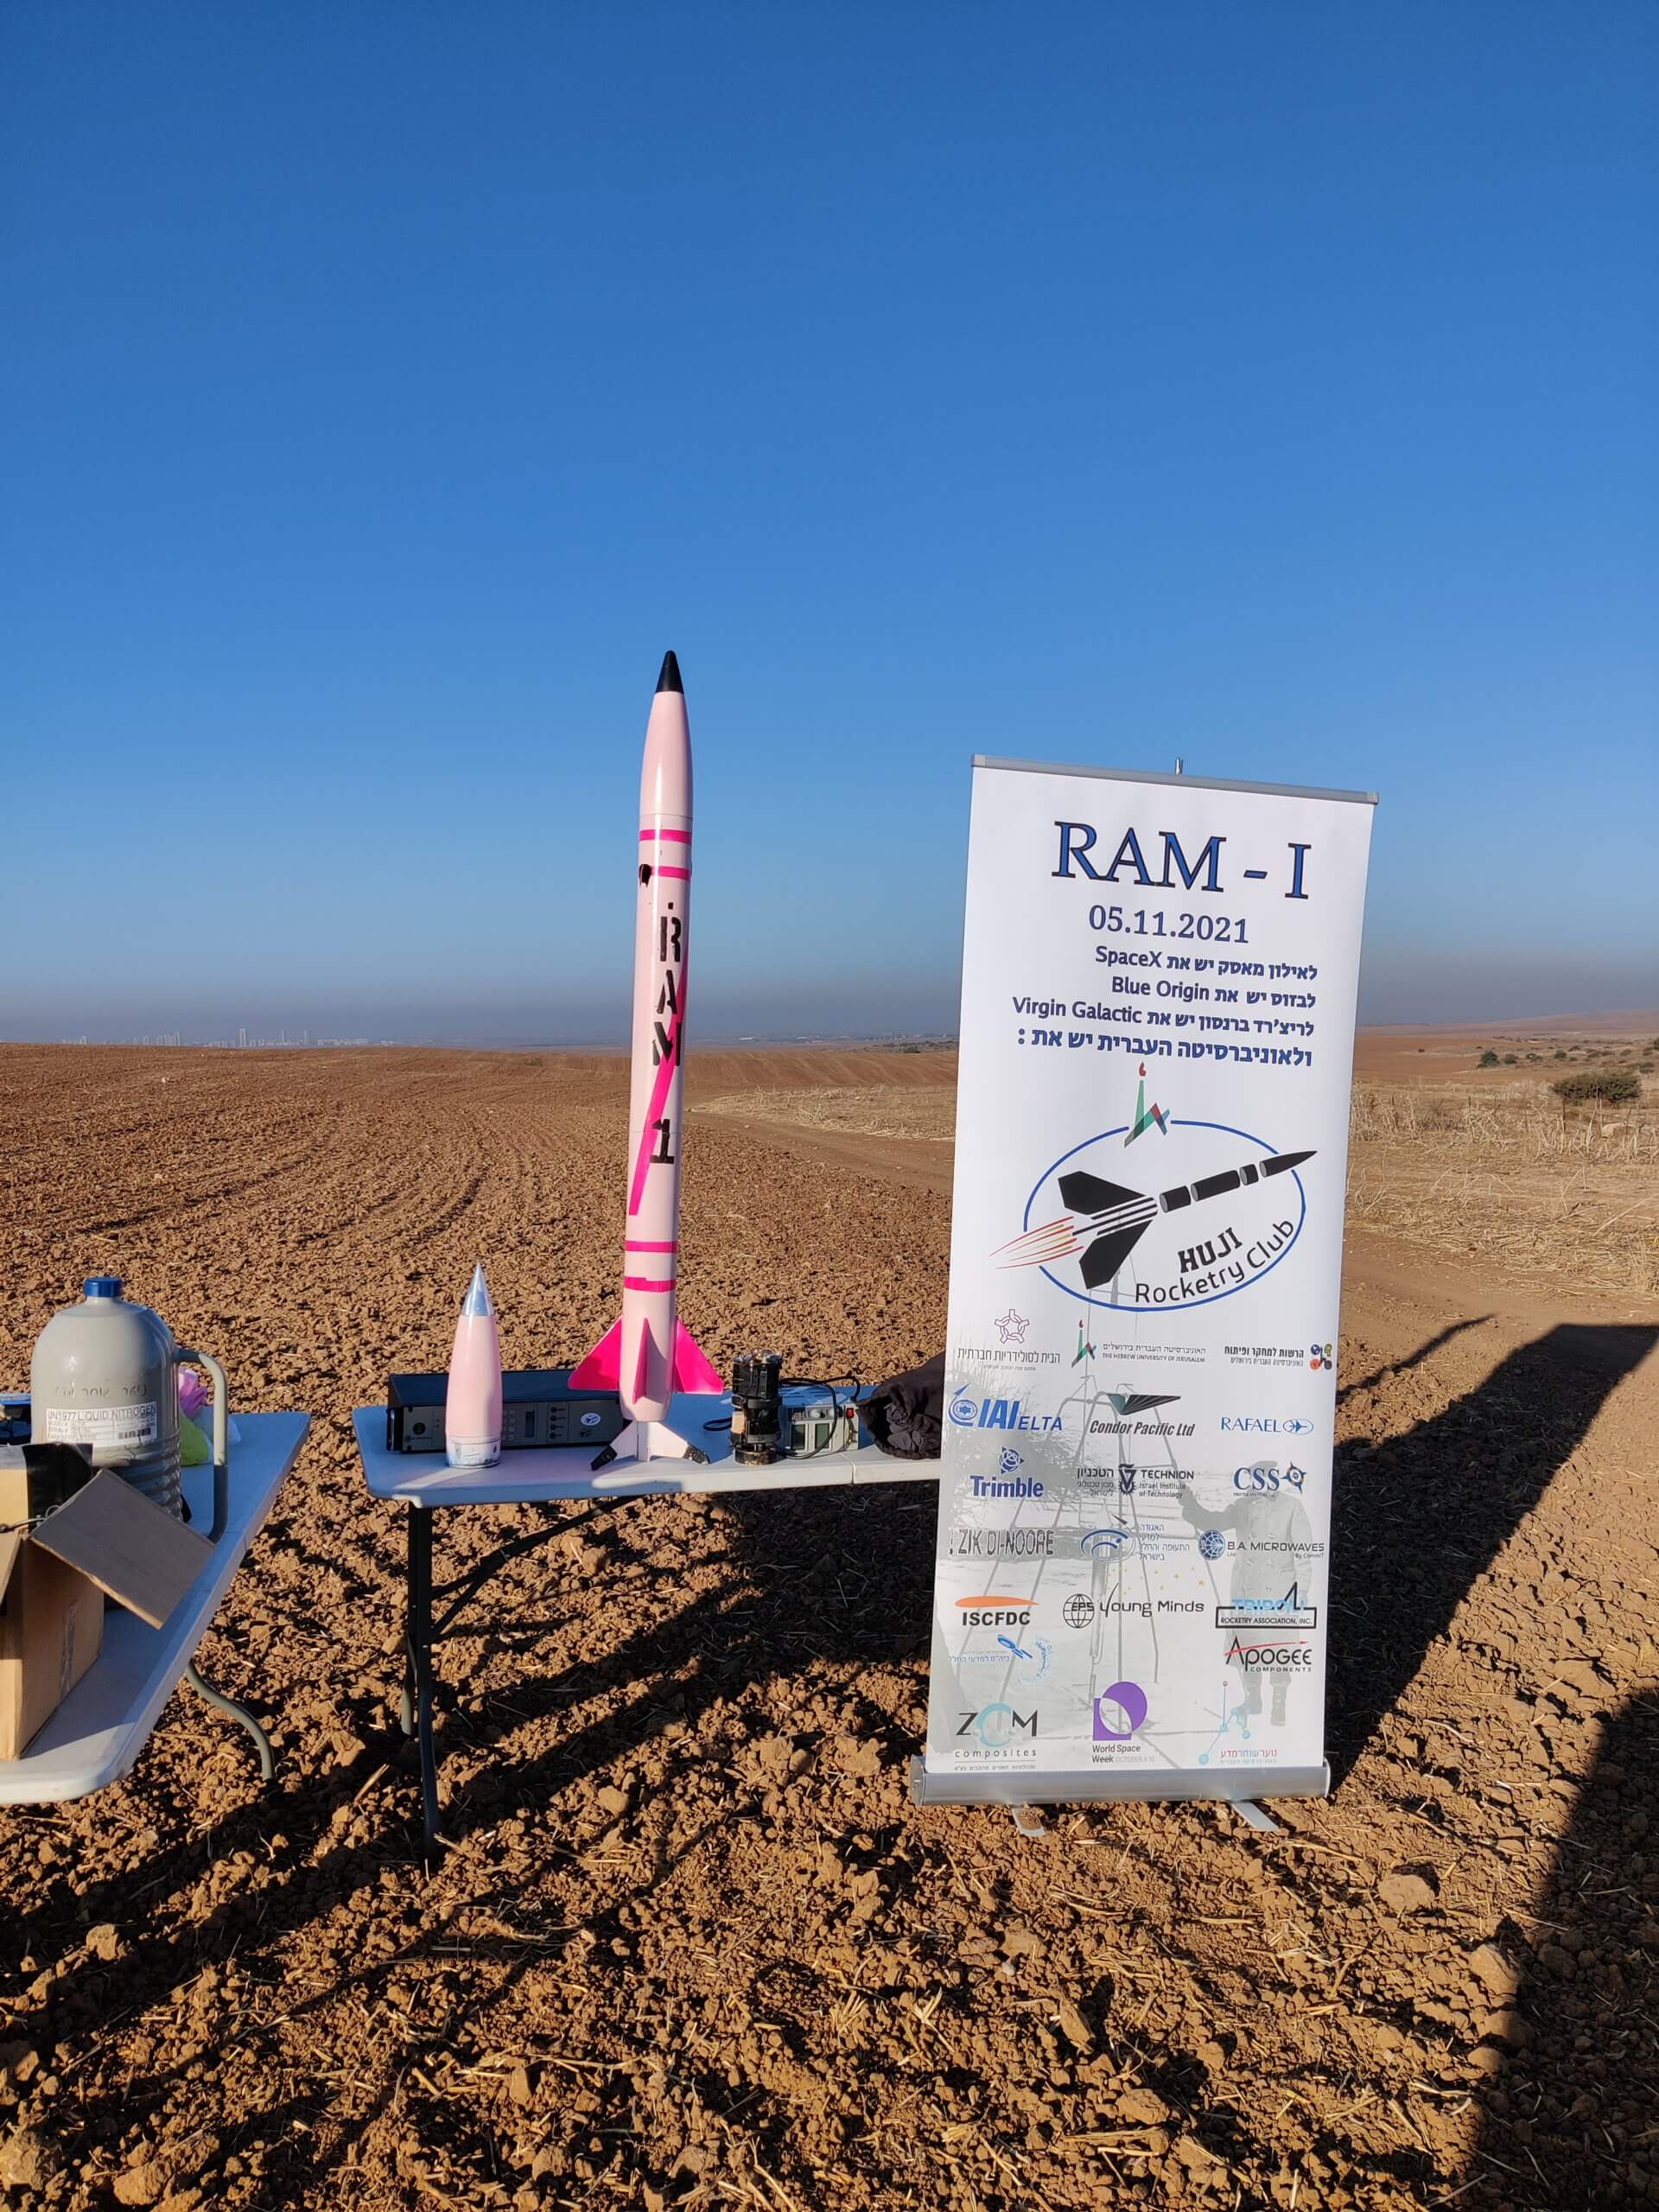 قبل إطلاق الصاروخ الطالبي RAM-1 بتاريخ 5/11/2021. الصورة مجاملة من التلمود رافائيل